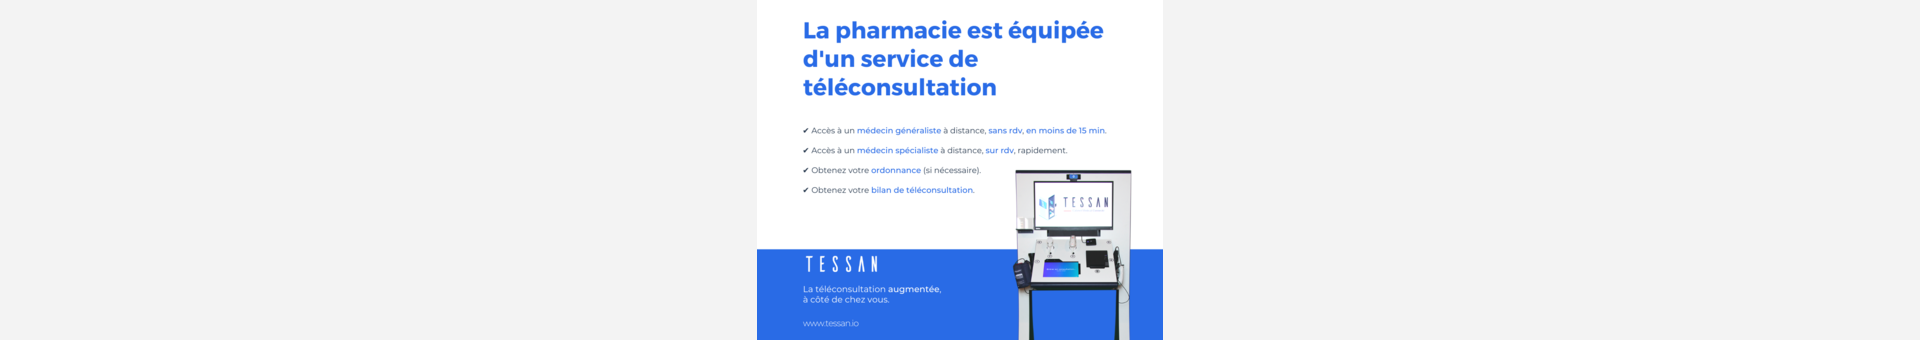 Pharmacie De La Béraudière,La Ricamarie